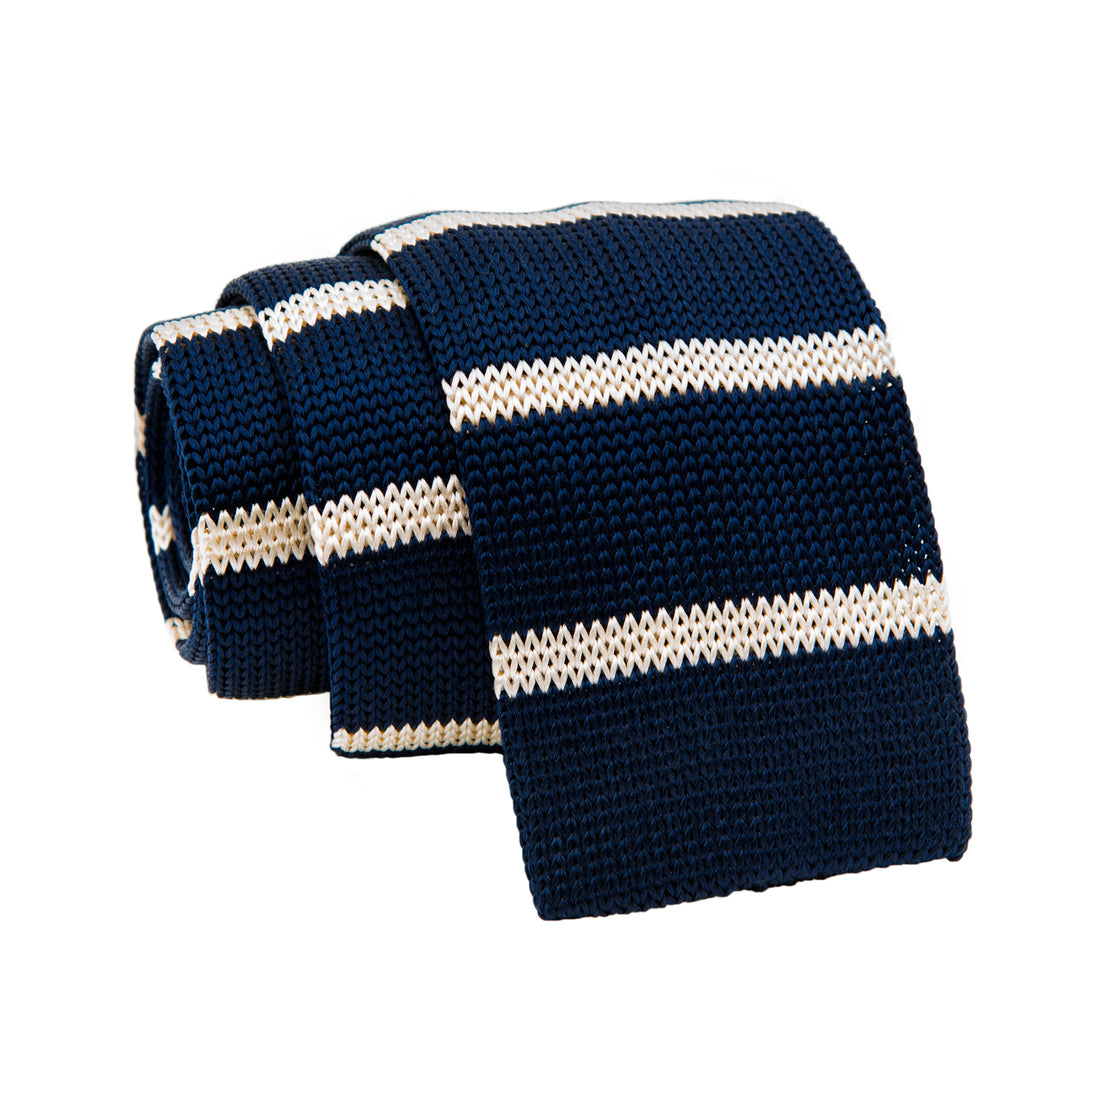 Navy & White Stripe Skinny Knit Tie